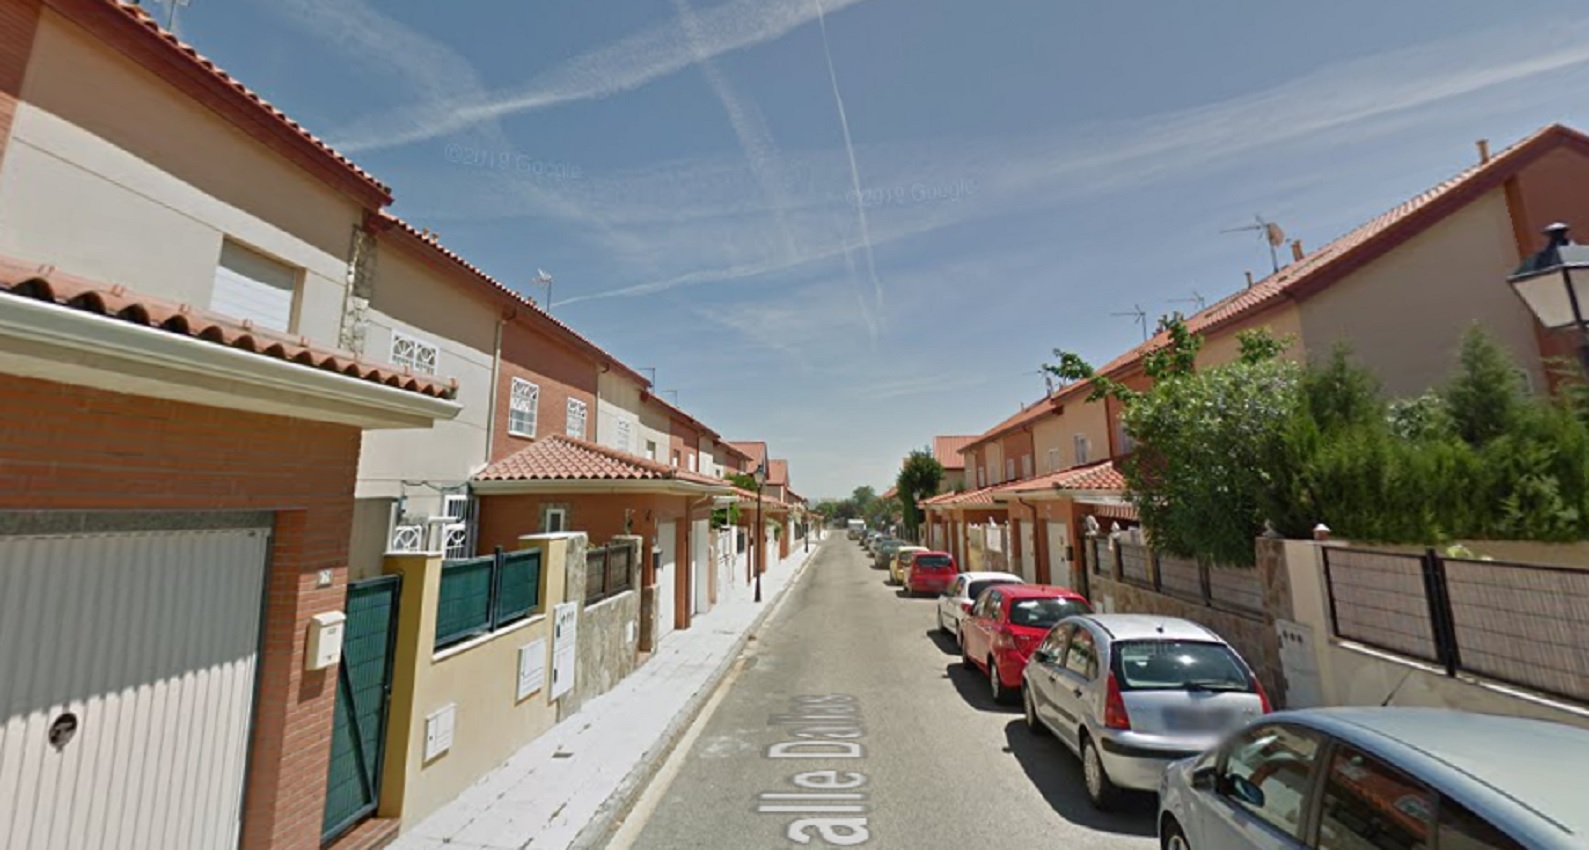 El incendio tuvo lugar en una vivienda de la calle Dalias, en Seseña (Toledo).